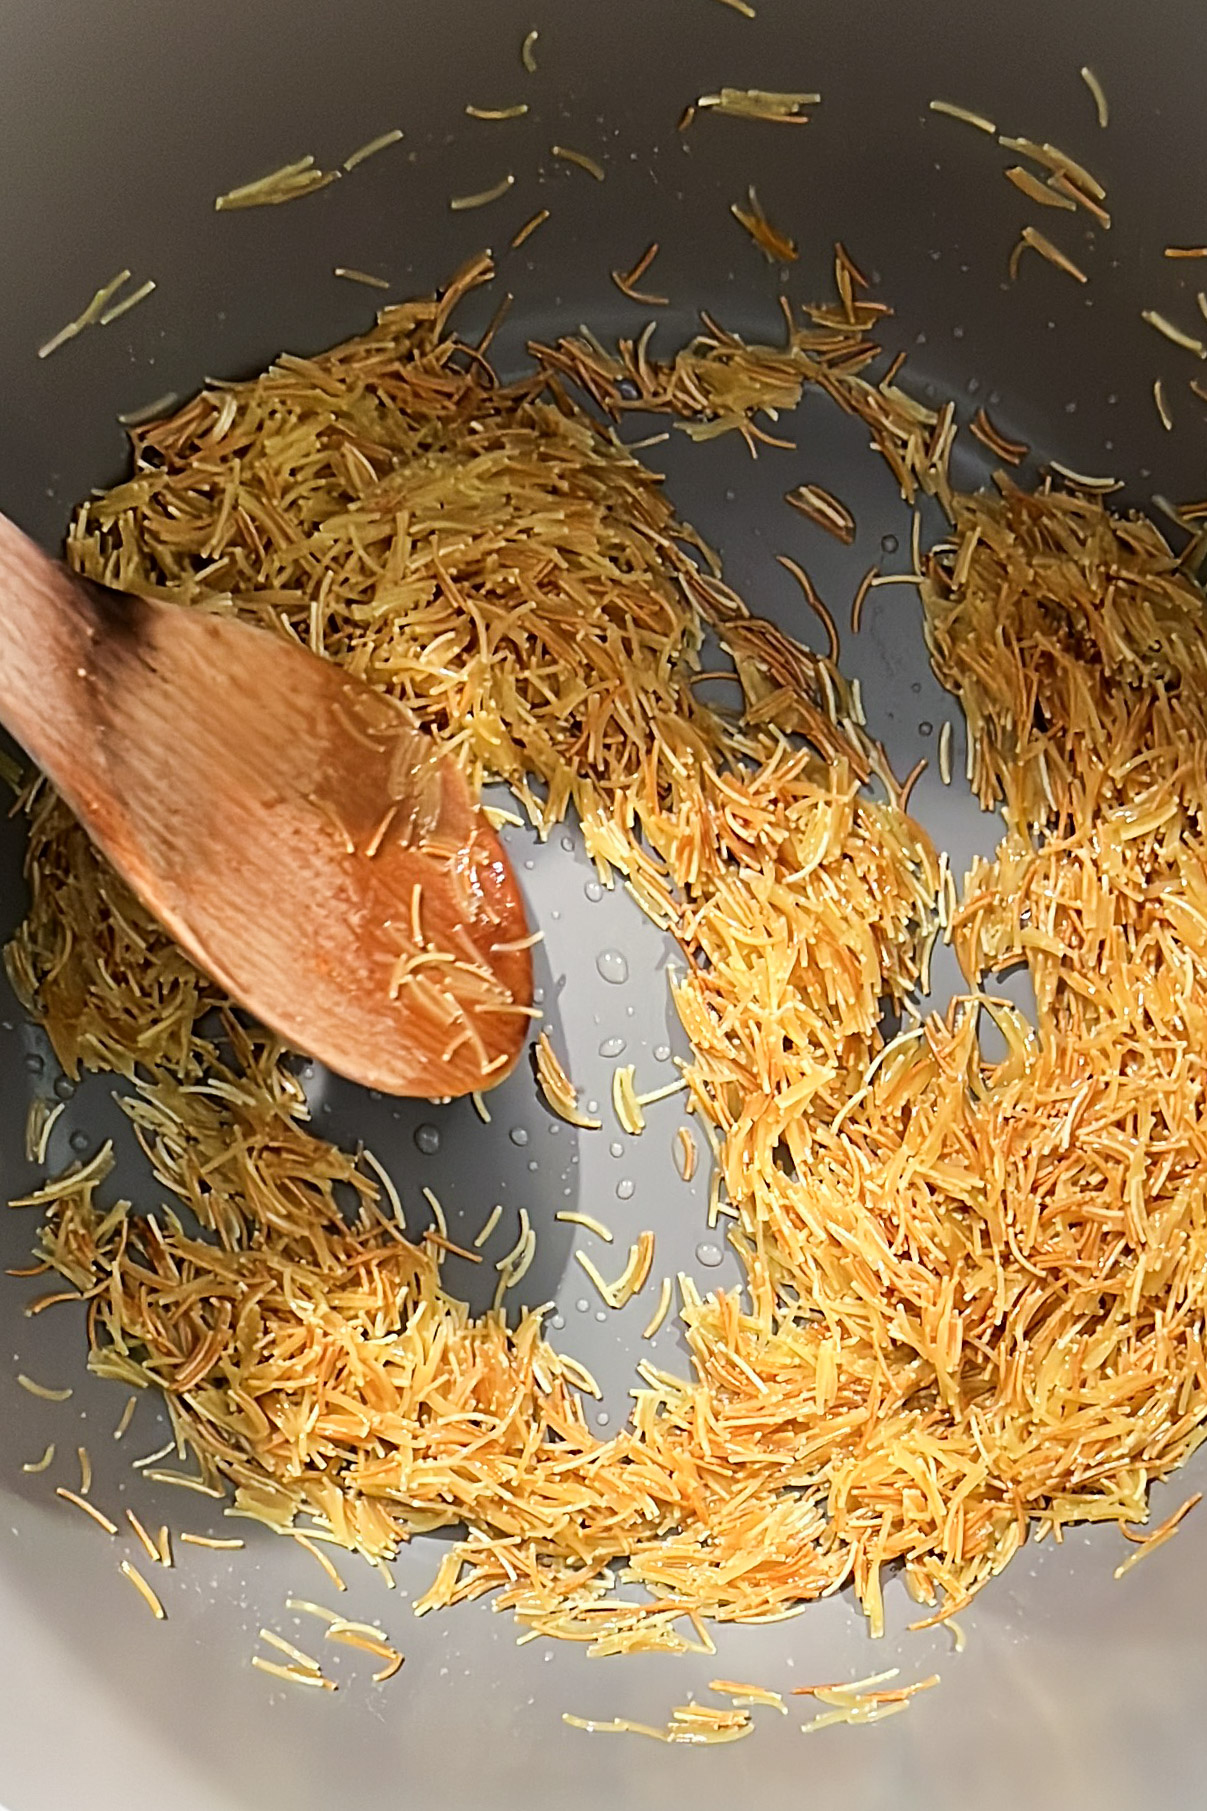 Saffron rice in a bowl.